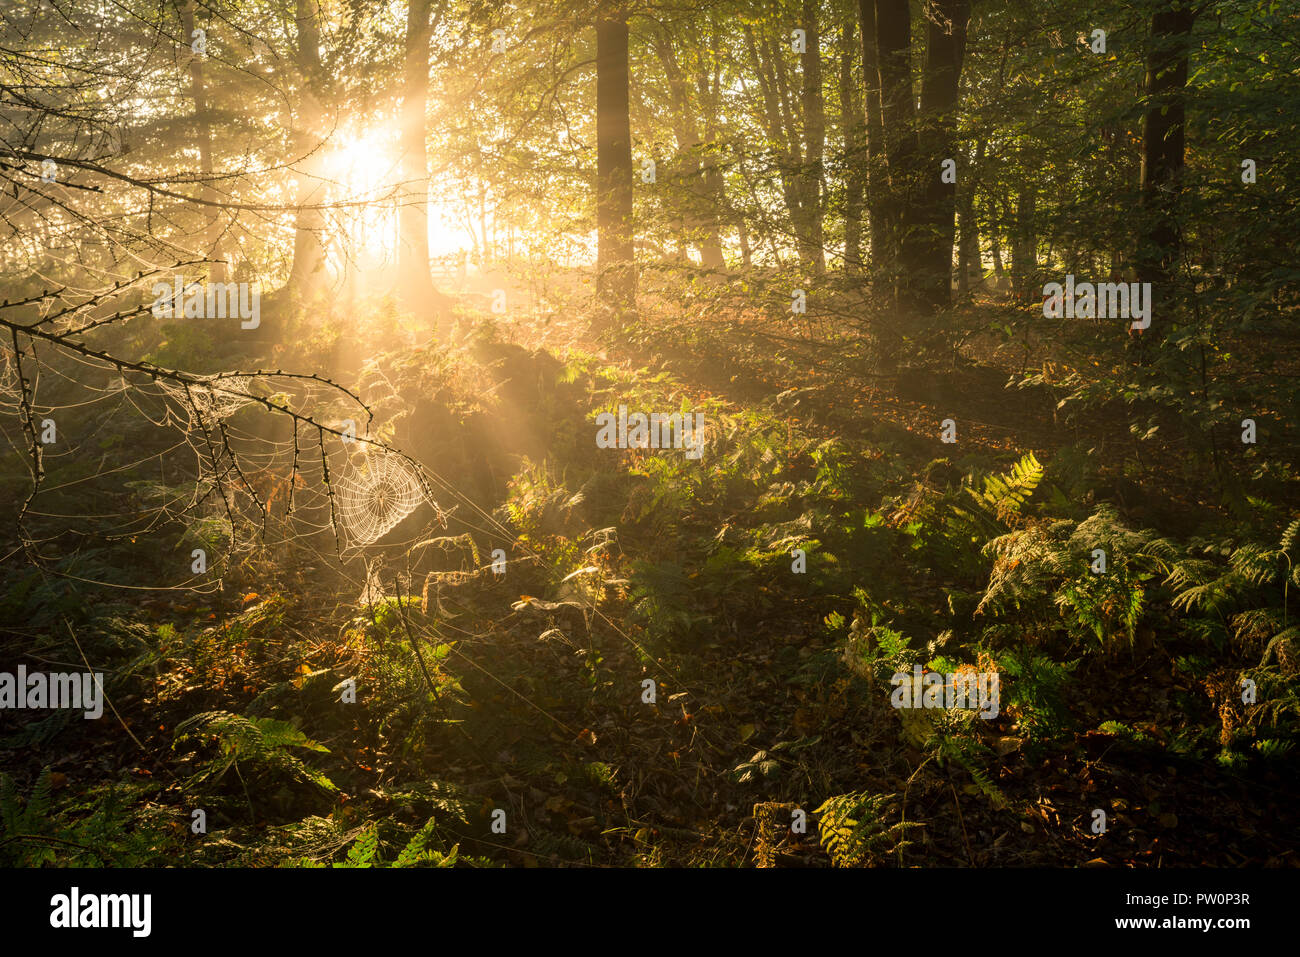 Die aufgehende Sonne in einem Nadelwald, Stockhill Holz, Mendip Hills Gebiet von außergewöhnlicher natürlicher Schönheit, Somerset, England. Stockfoto